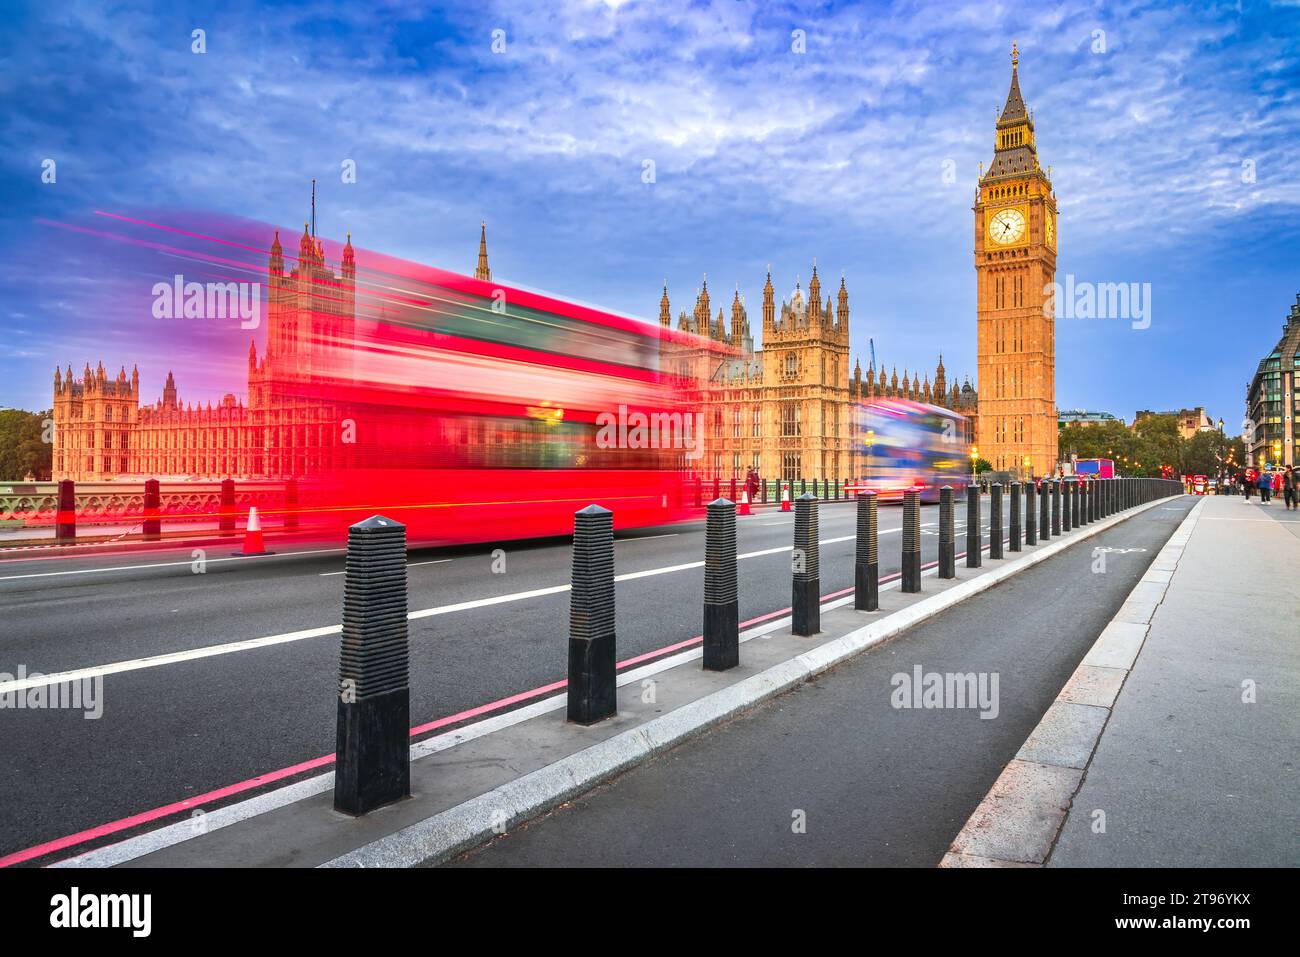 London, Vereinigtes Königreich. Rote Busfahrt auf Westminster Bridge, blaue Stunde, Big Ben und House of Commons Gebäude im Hintergrund, Reise englisches Wahrzeichen. Stockfoto